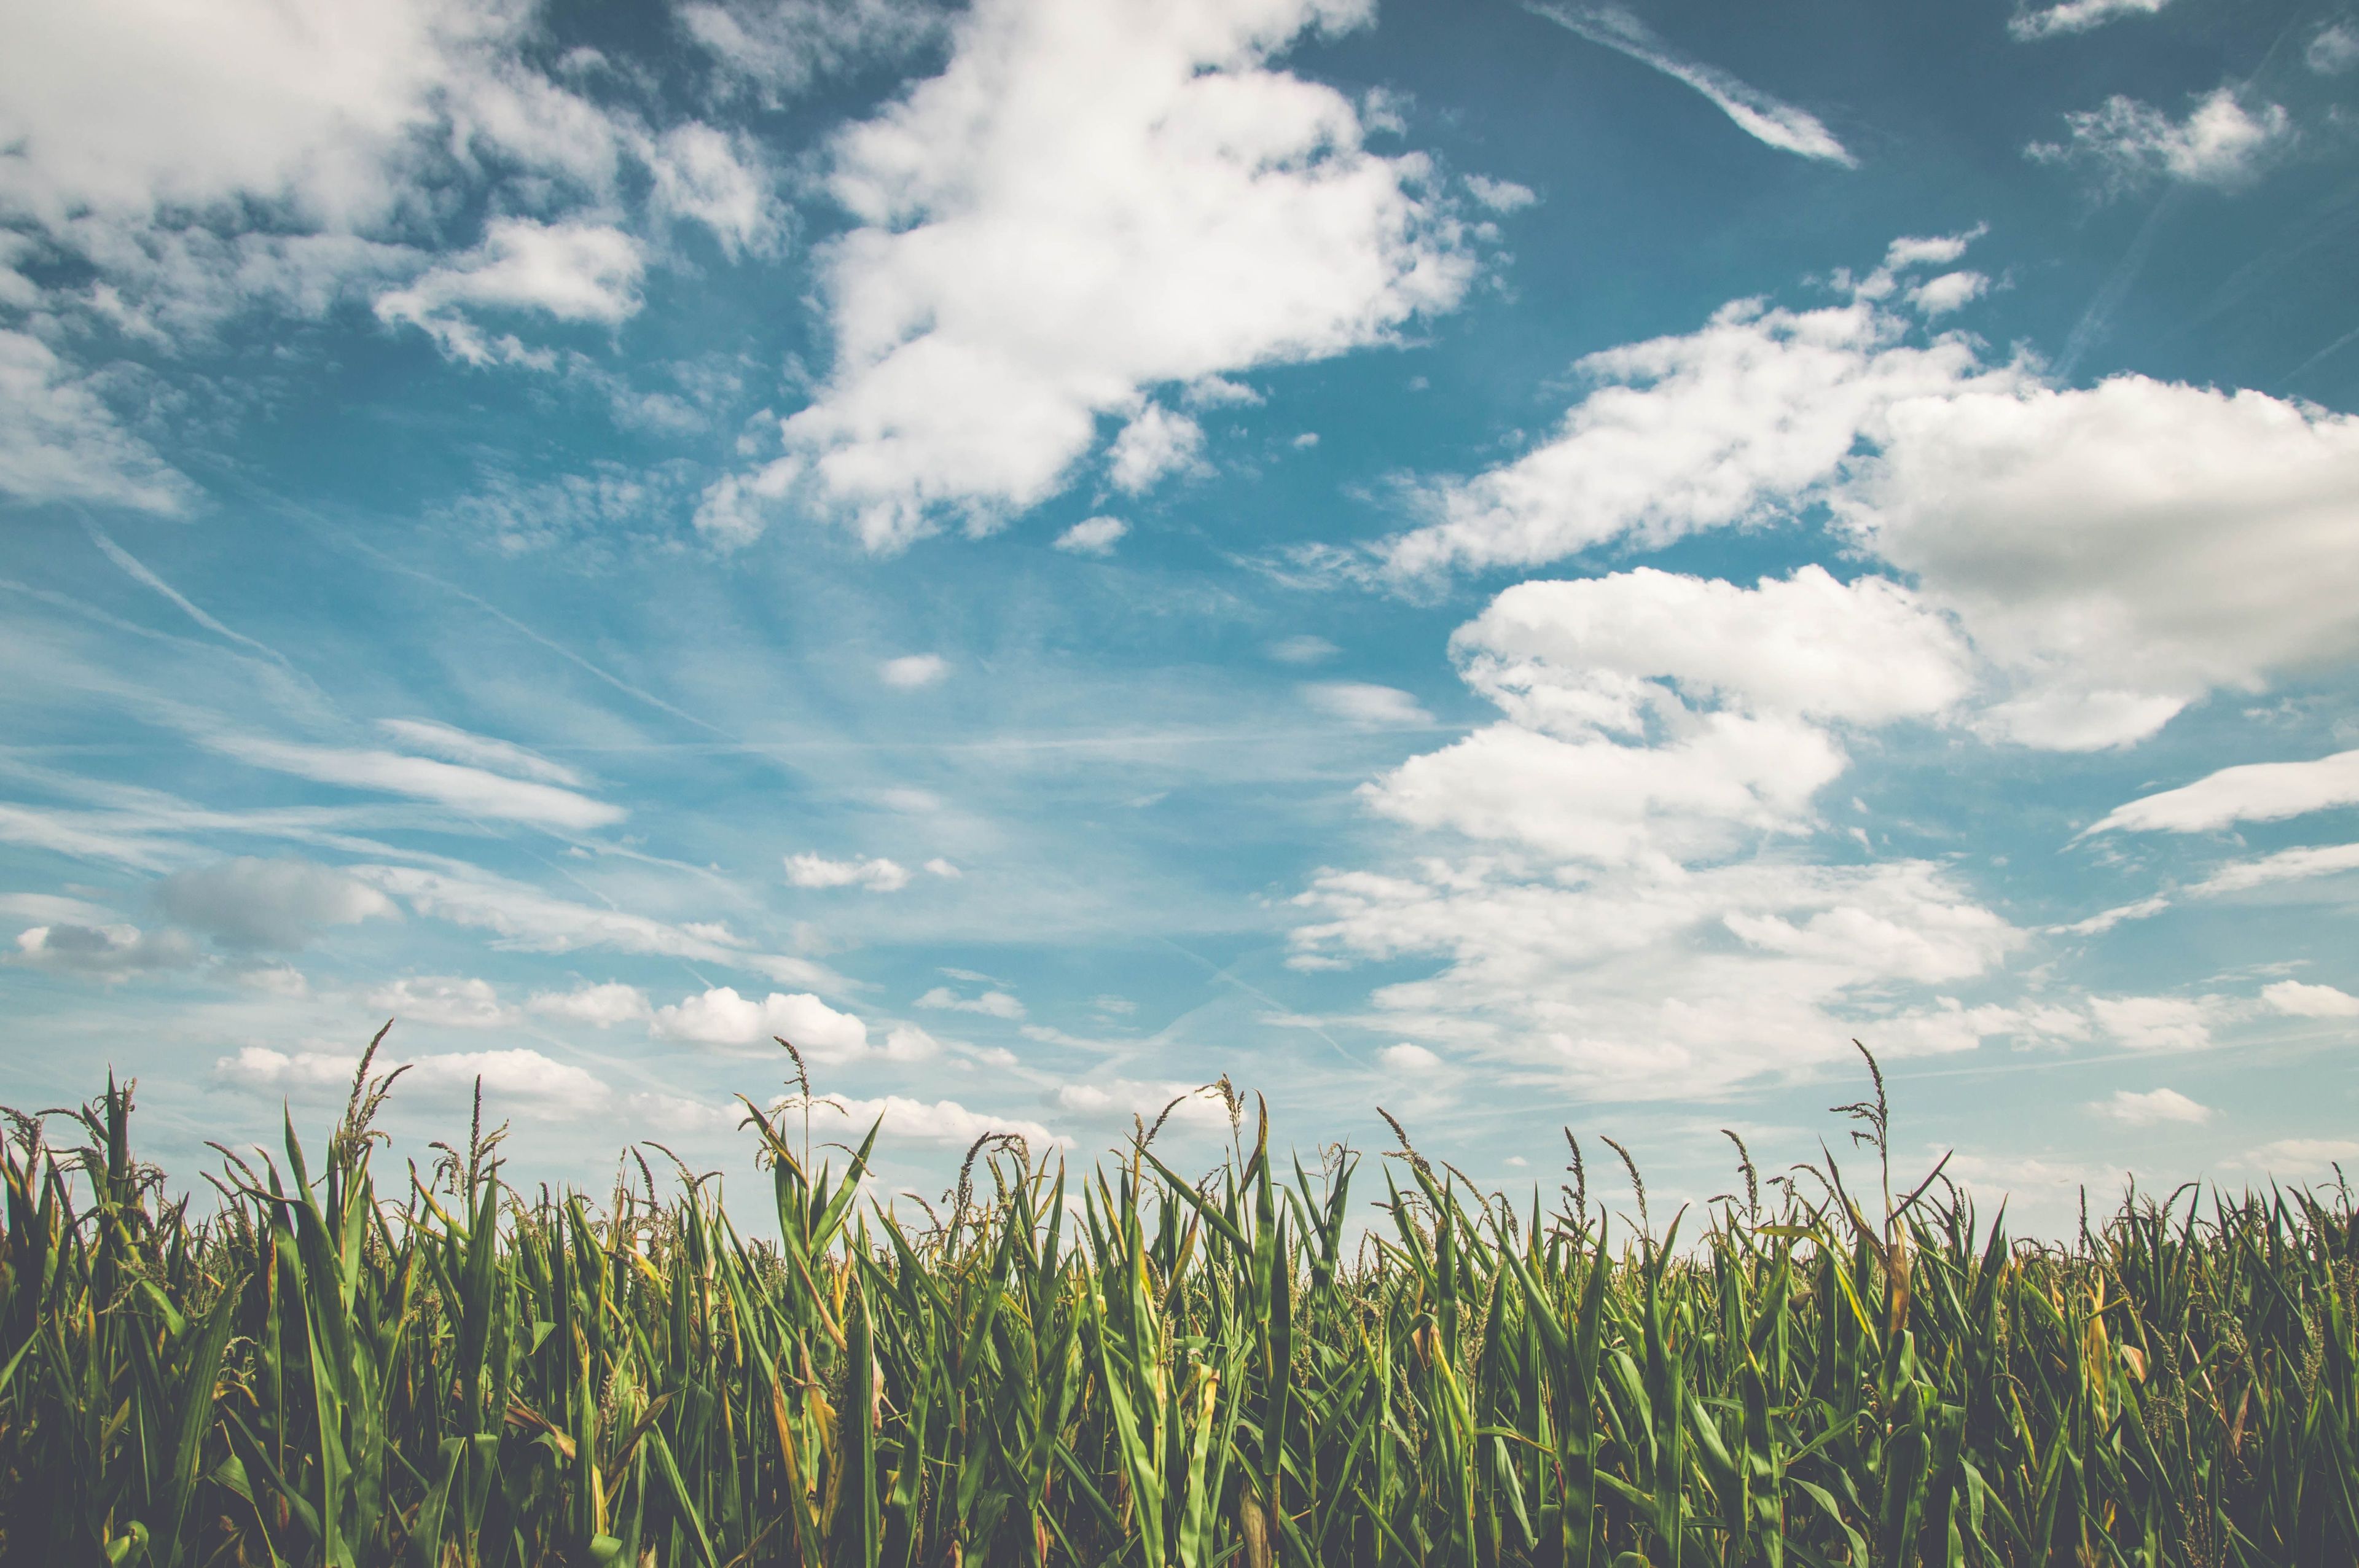 Grass field under cloudy, blue sky